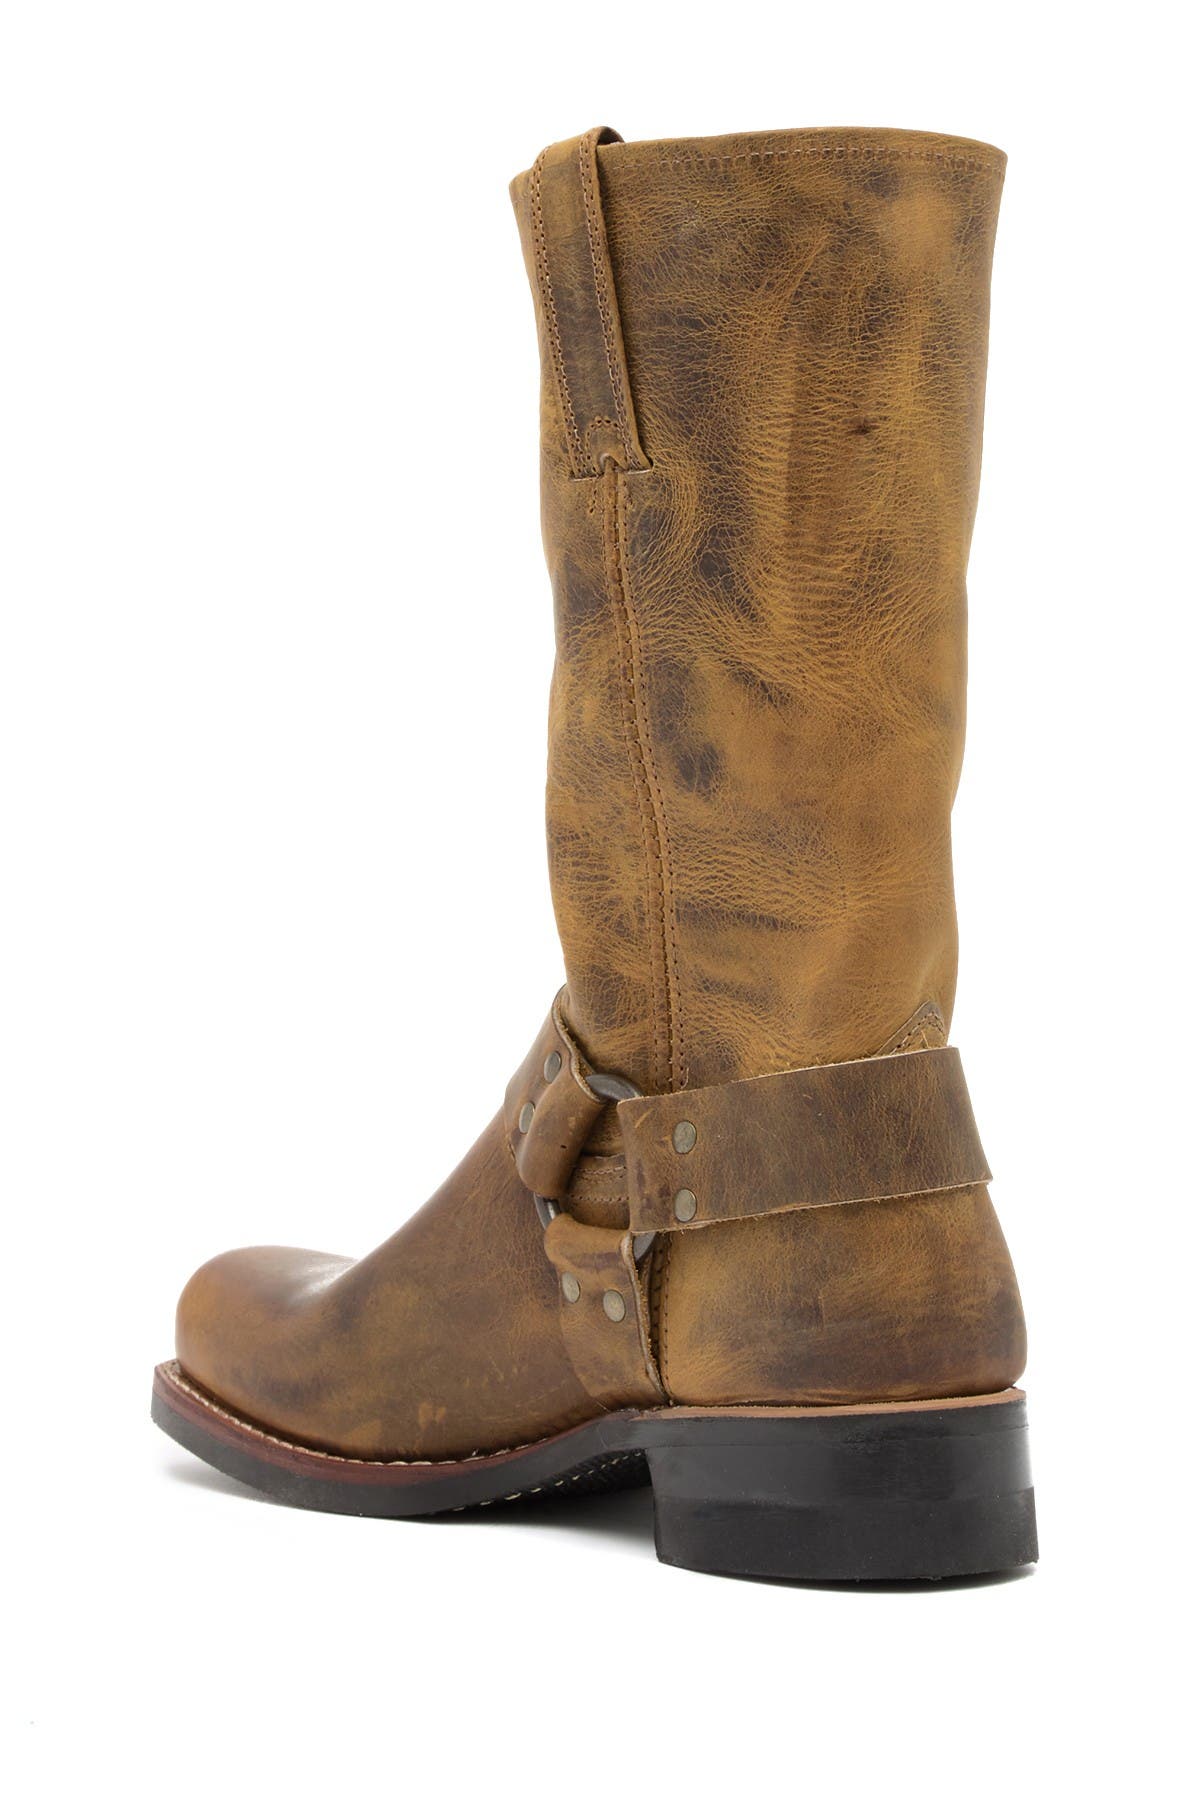 frye boots wide width